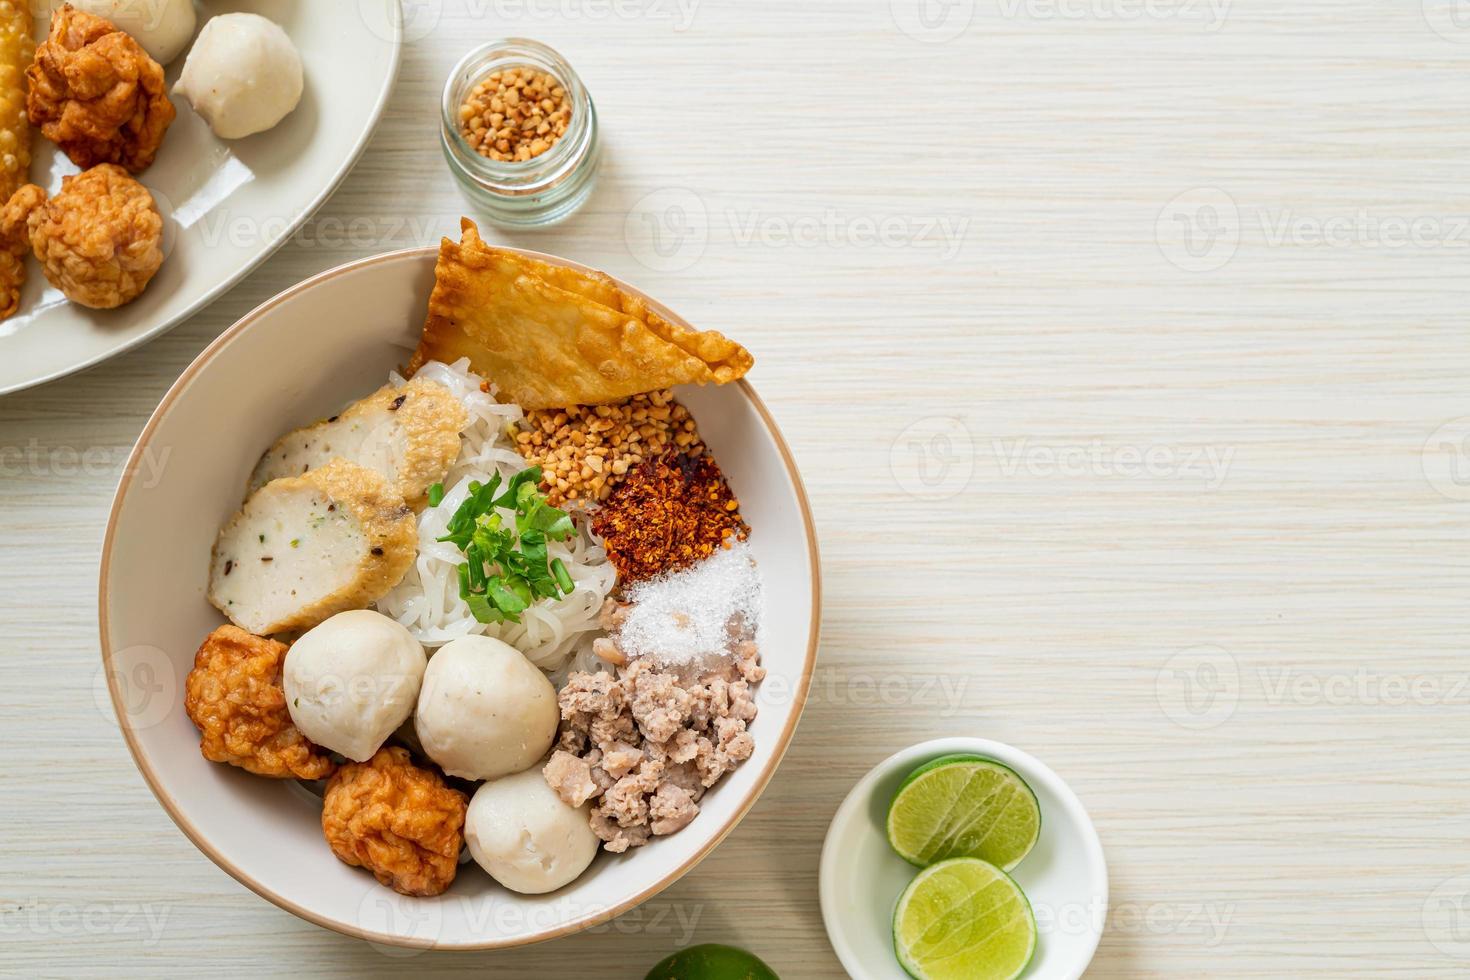 macarrão de arroz raso picante com bolinhos de peixe e bolinhos de camarão sem sopa - comida asiática foto